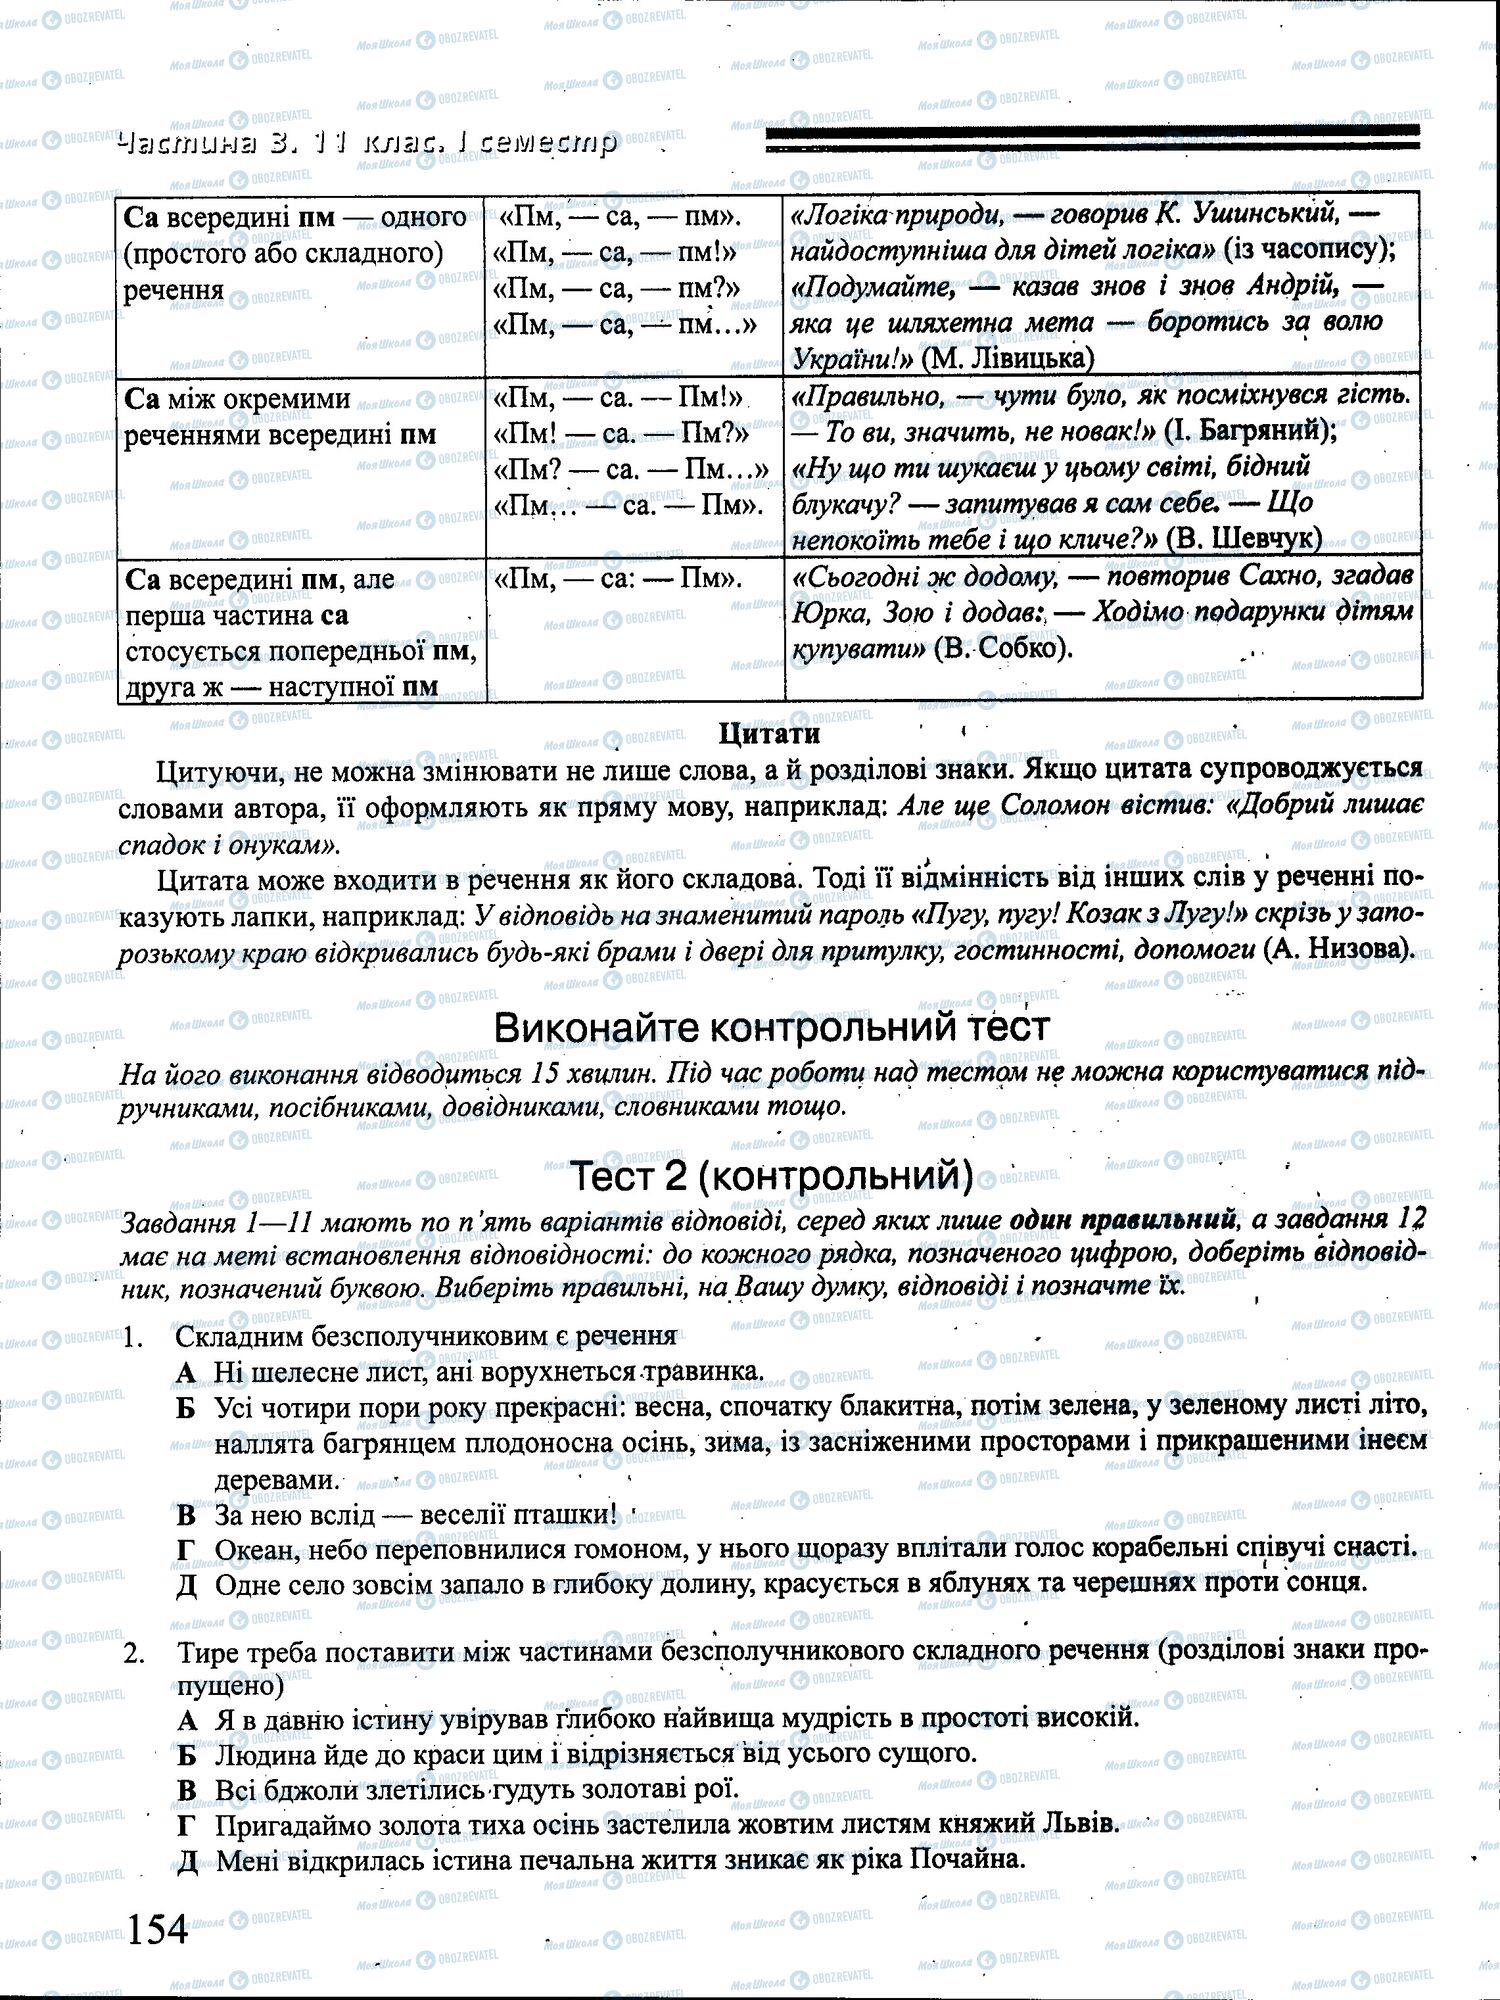 ДПА Укр мова 4 класс страница 154